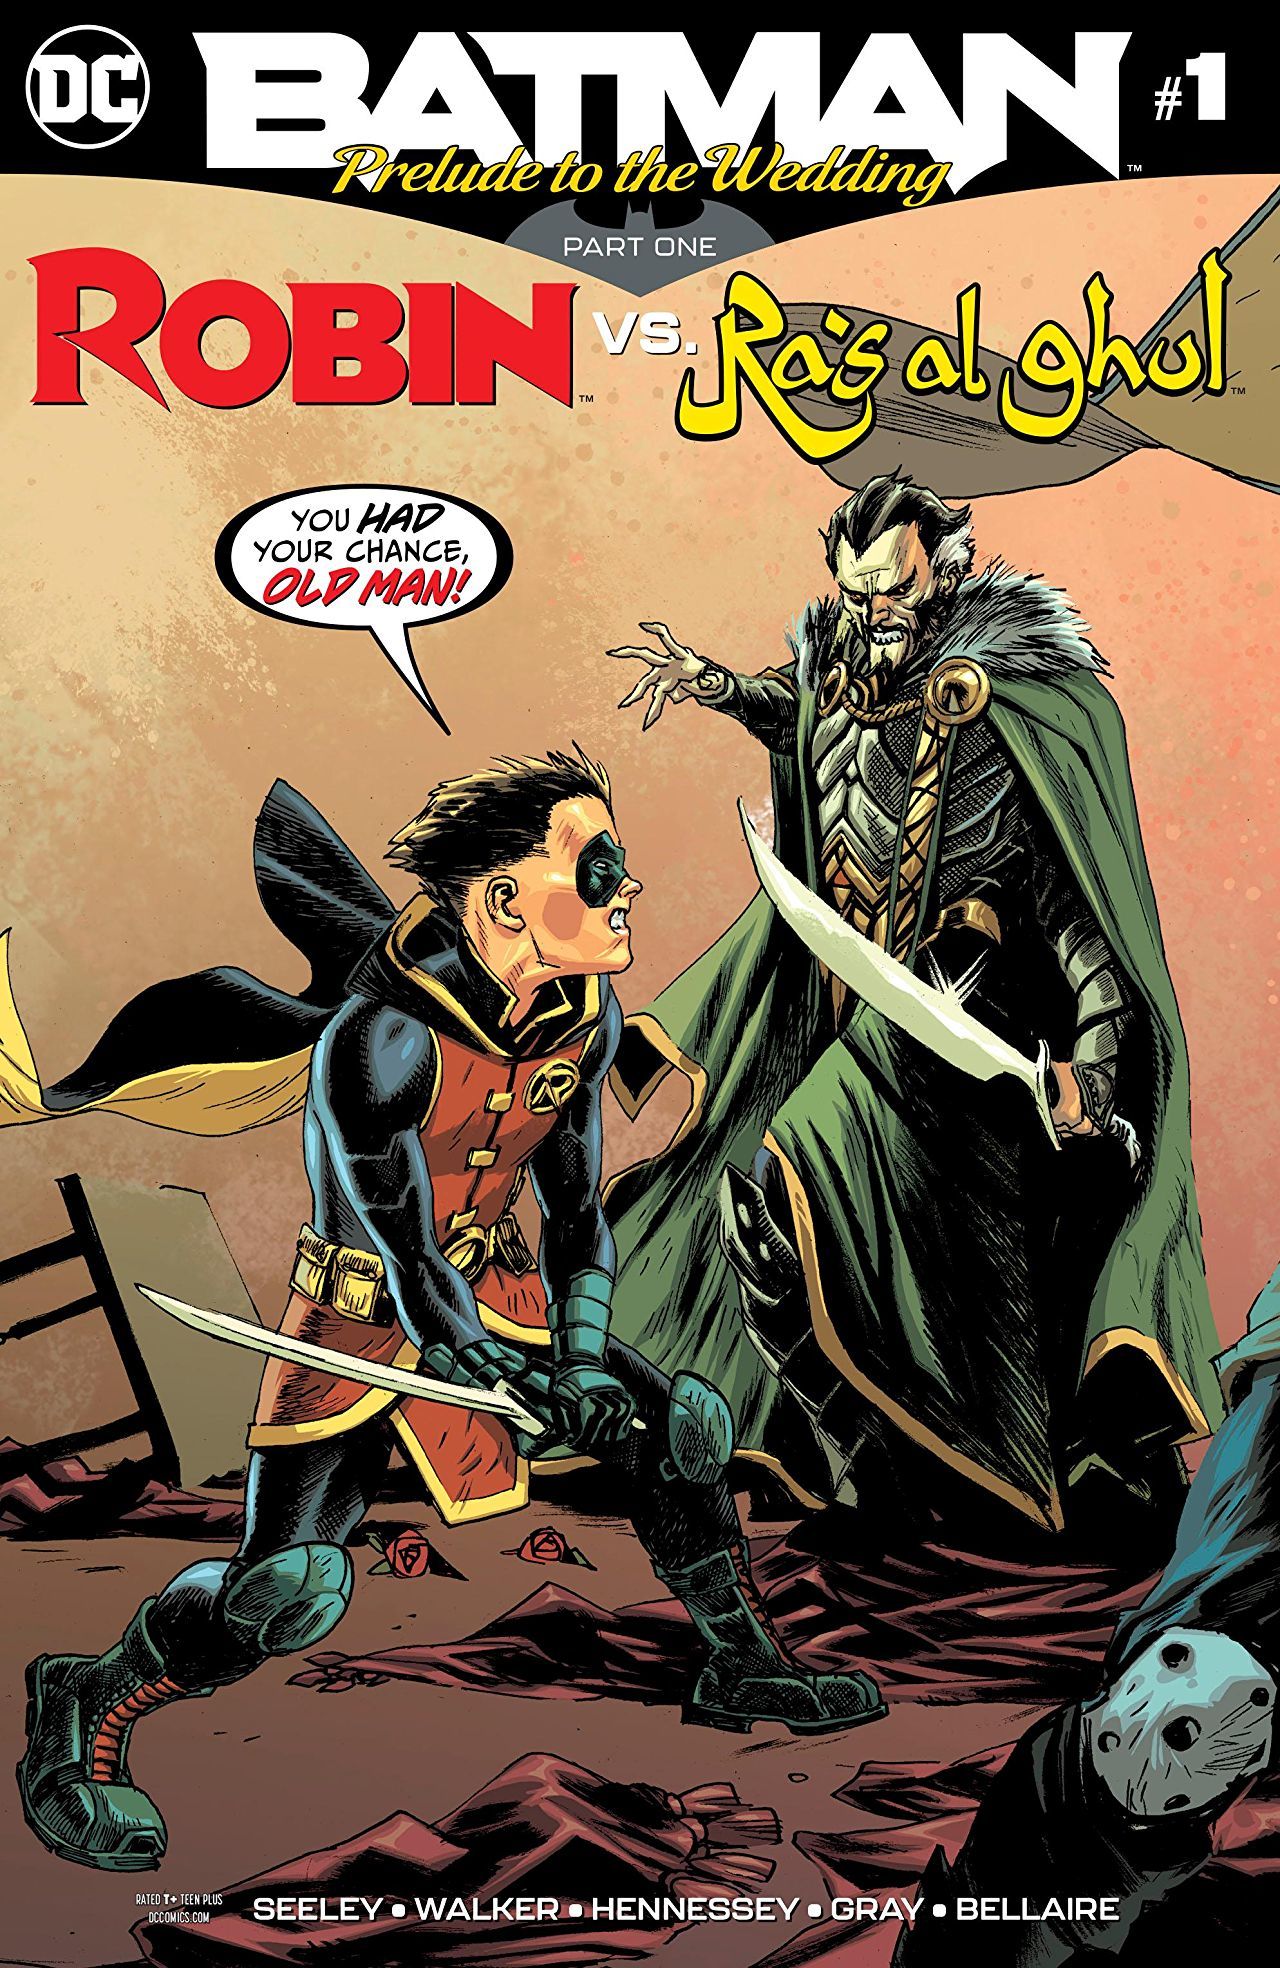 Robin-vs-Ras-al-Ghul-Cover.jpg